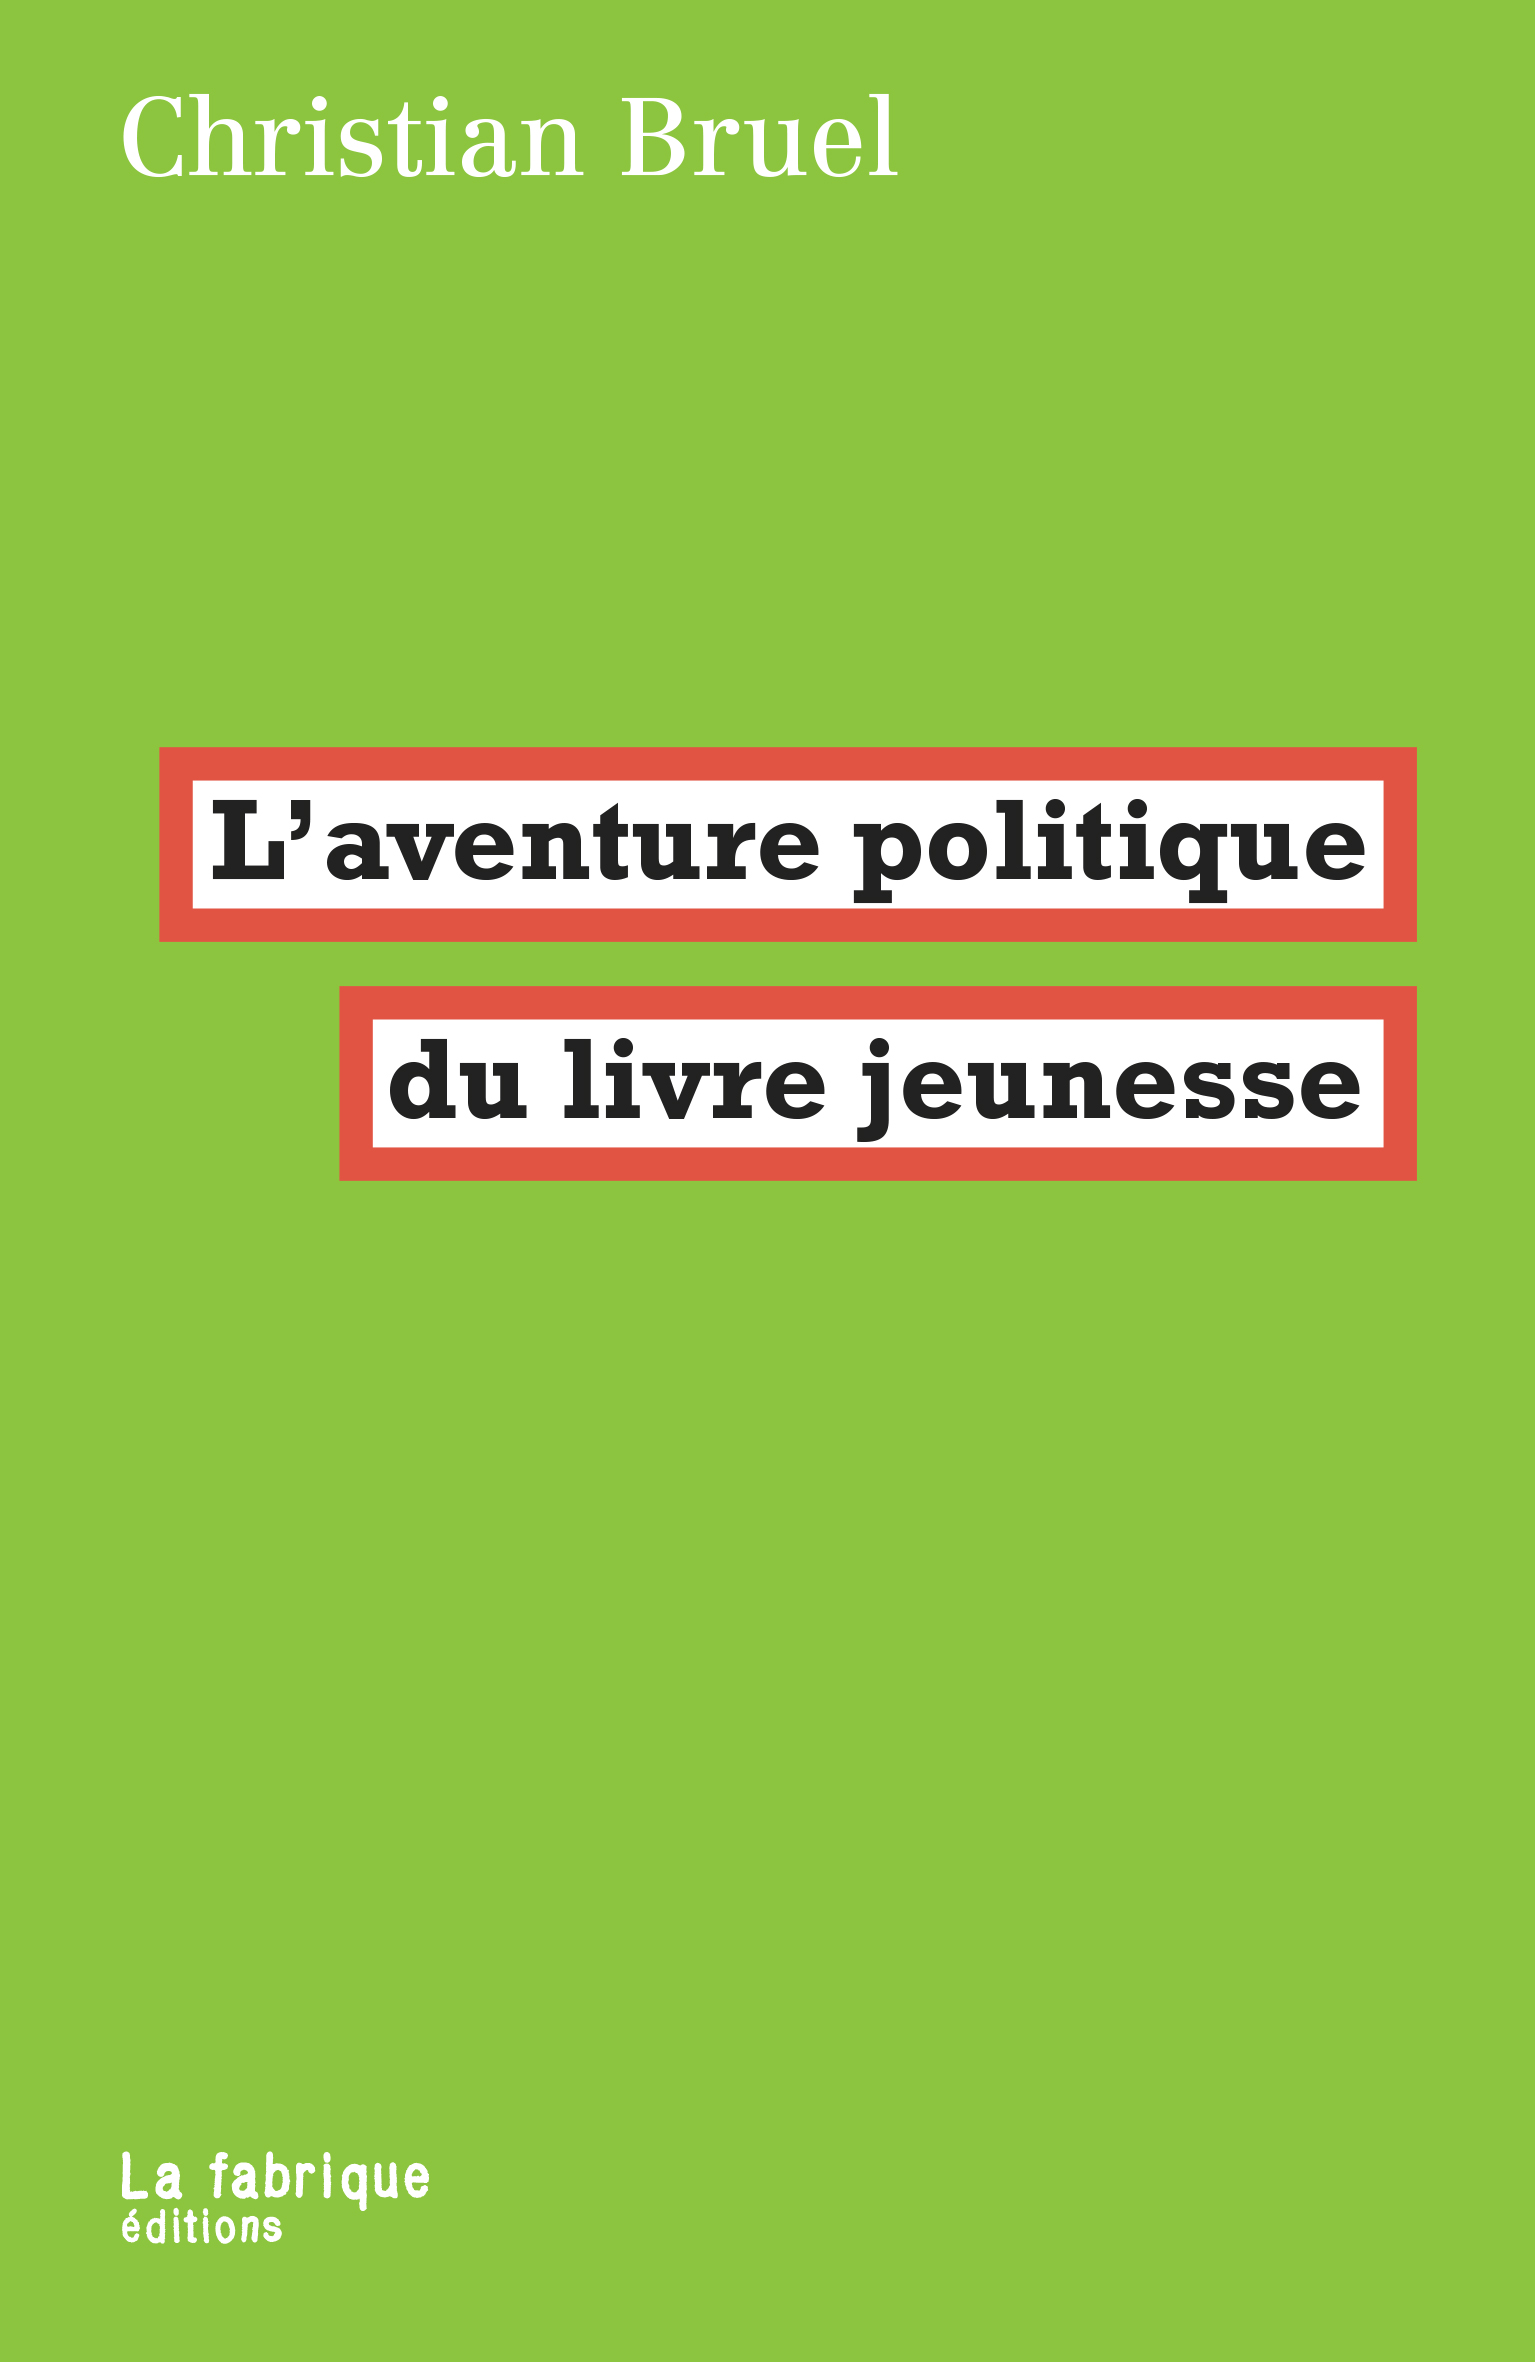 L’aventure politique du livre jeunesse (fr language, 2022, La fabrique éditions)